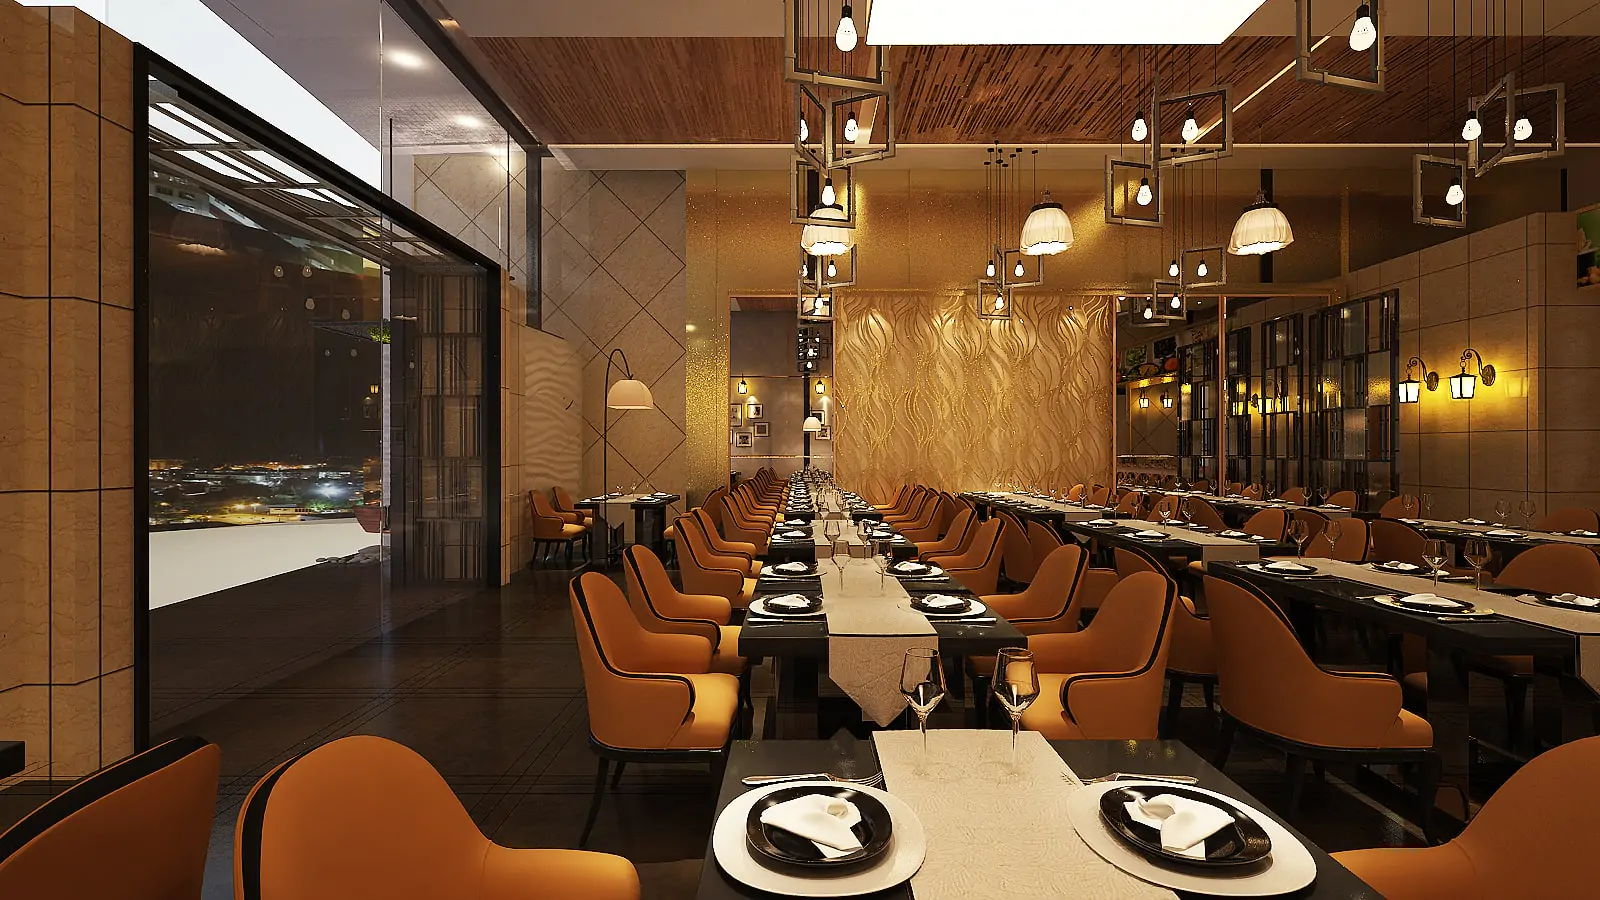 Tangail Restaurant CBFCC 3D Design (15)